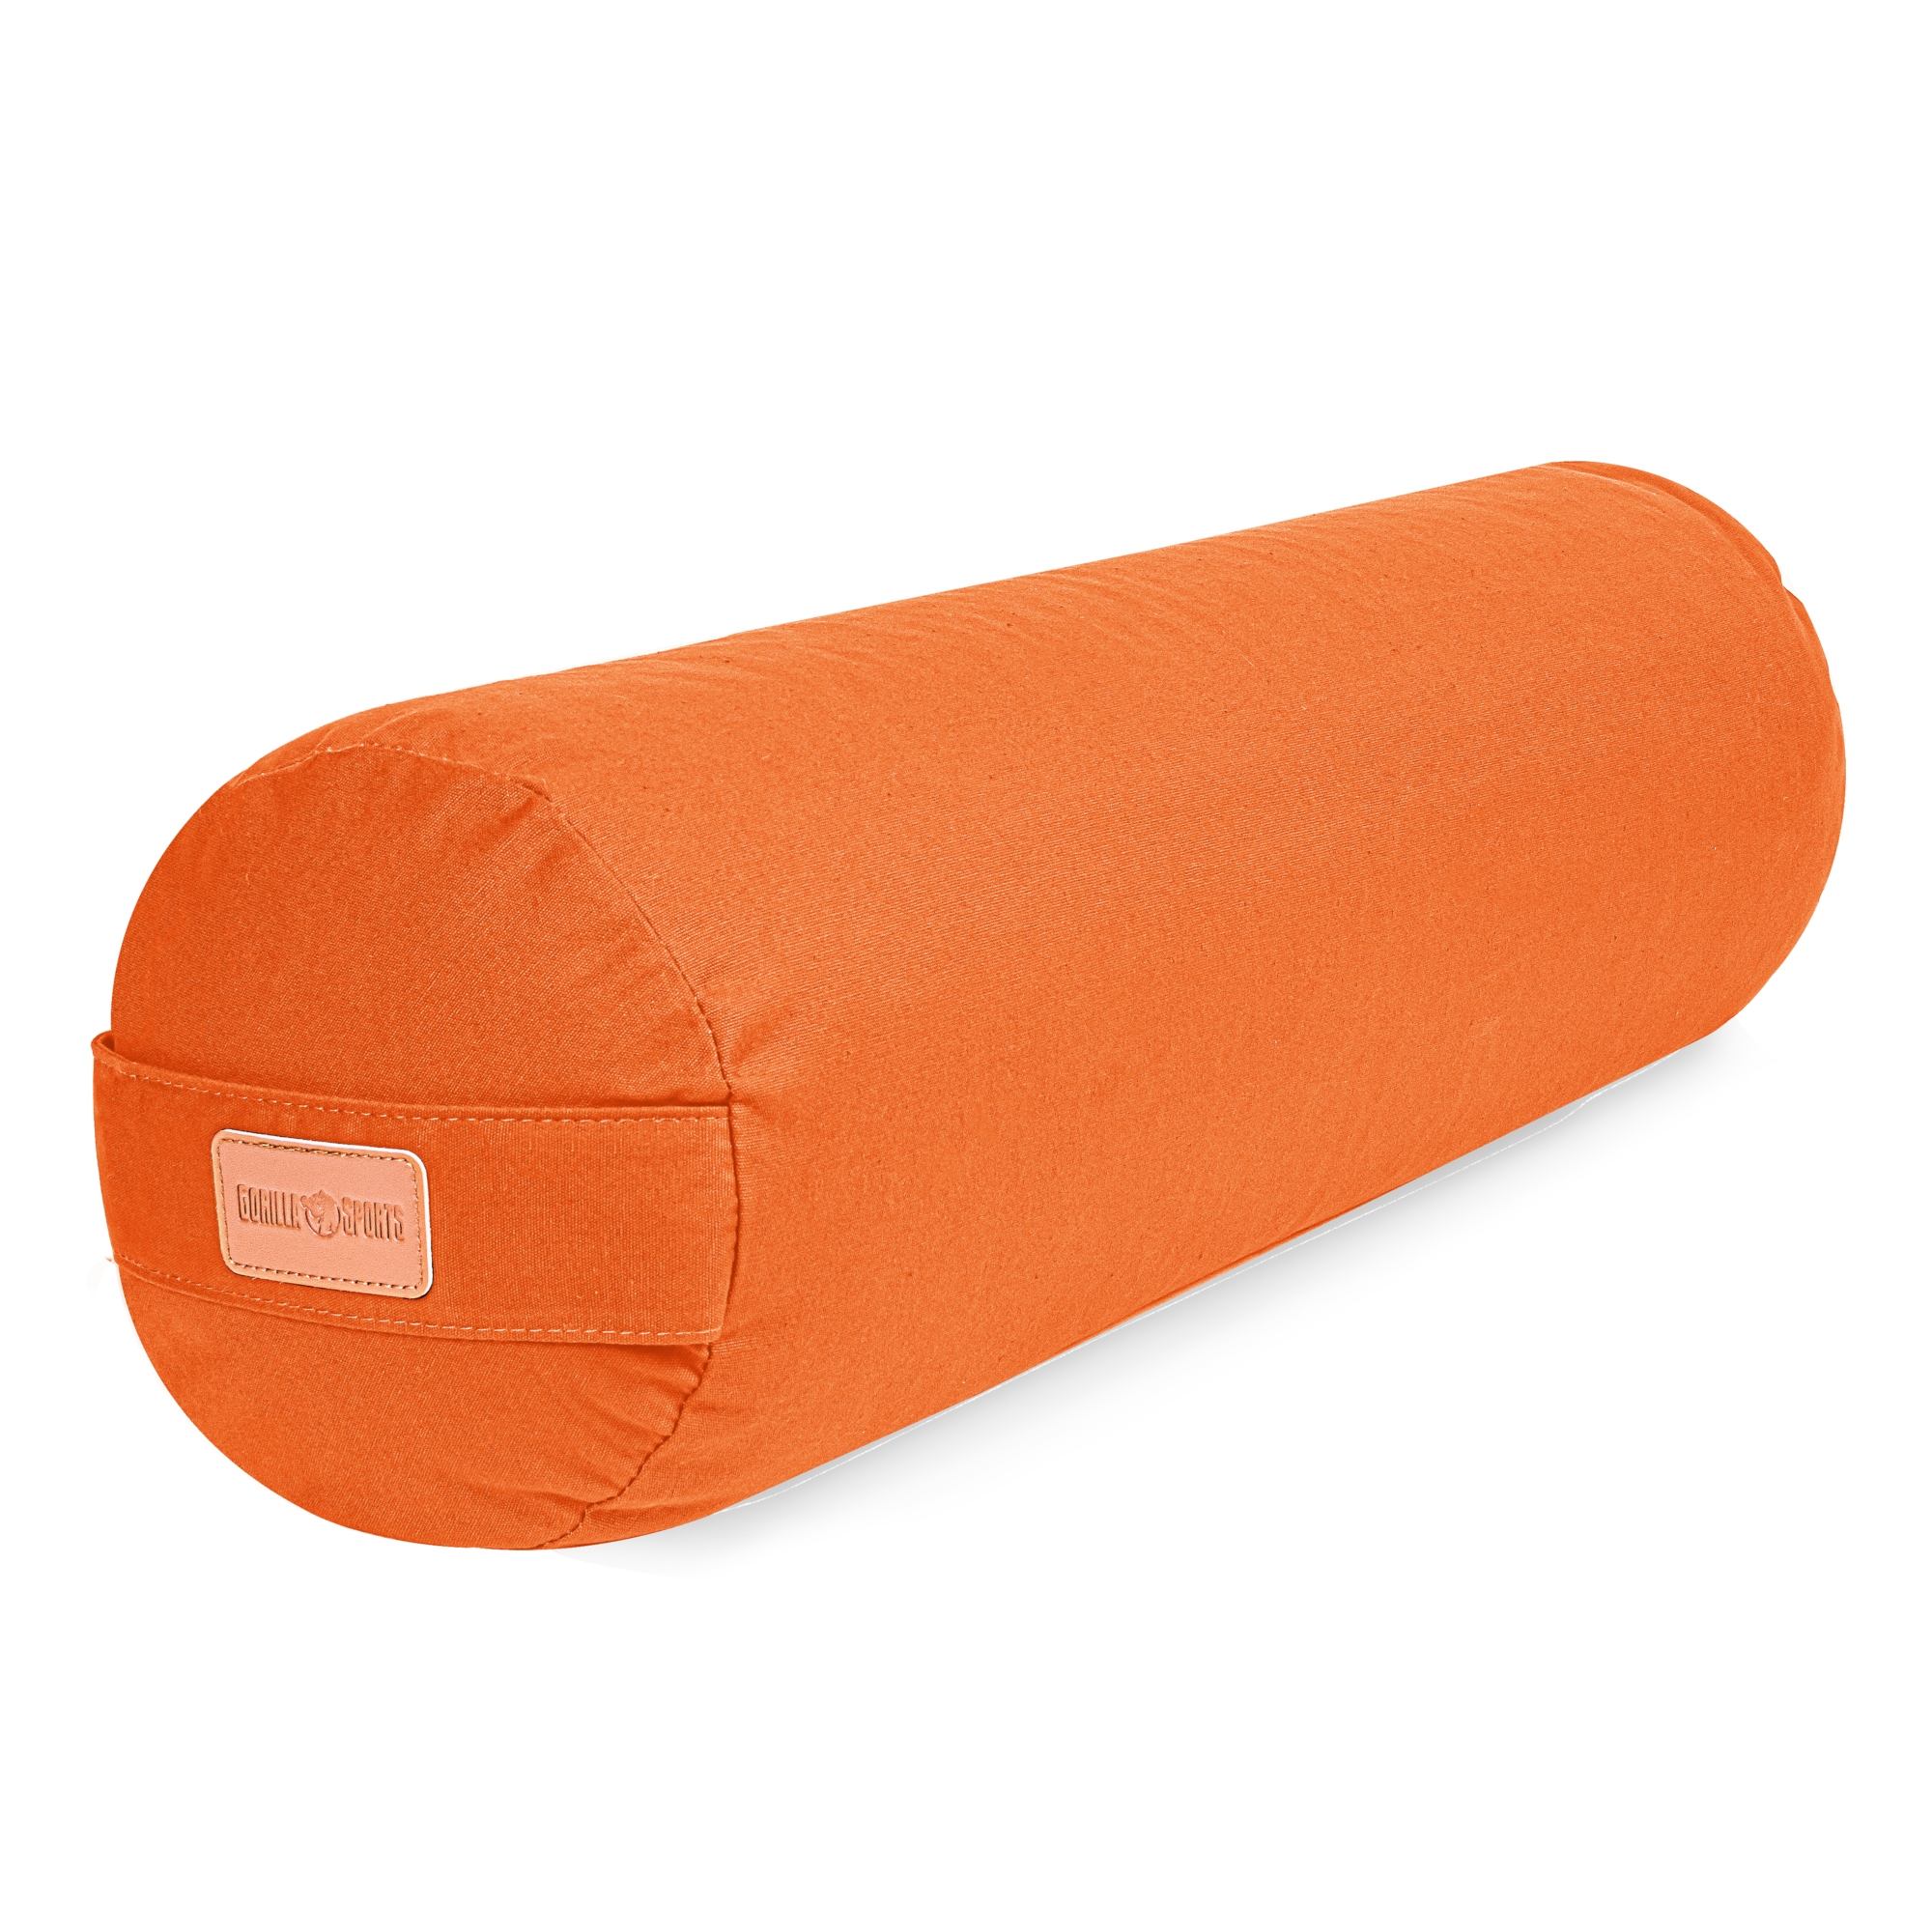 GORILLA SPORTSÂ® traversin de yoga orange - avec rembourrage en balles d'Ã©peautre bio - Housse en coton lavable